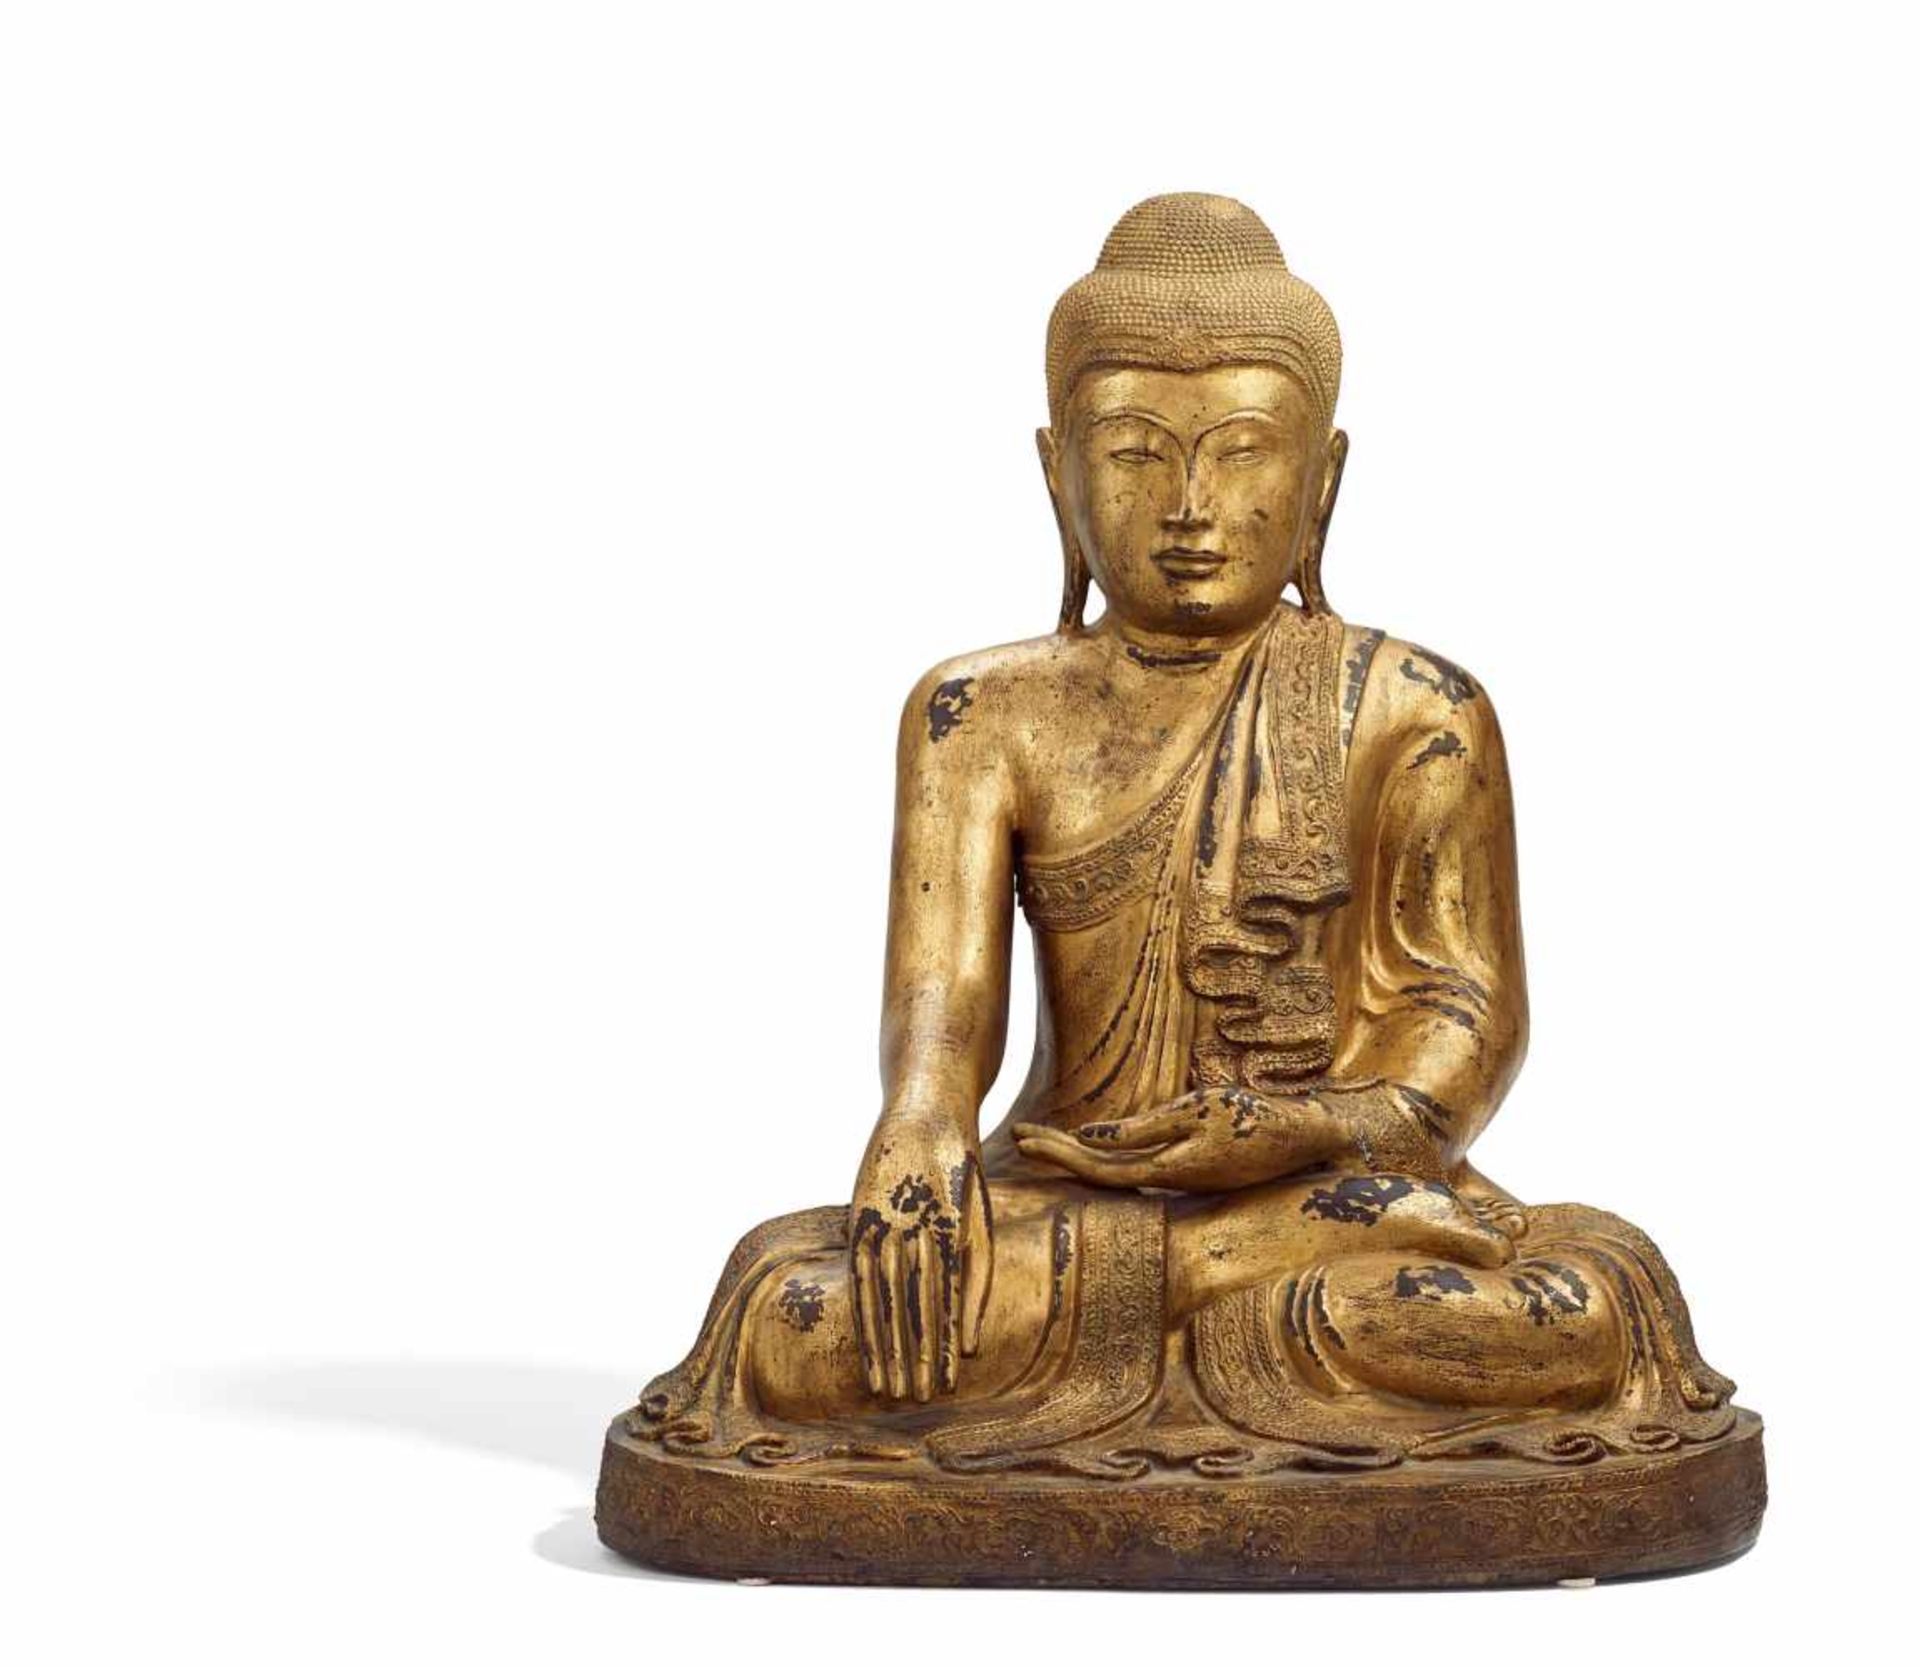 GROßER SITZENDER BUDDHA. Burma/Myanmar. 19./20. Jh. Bronze mit Lackvergoldung. Das Antlitz mit in